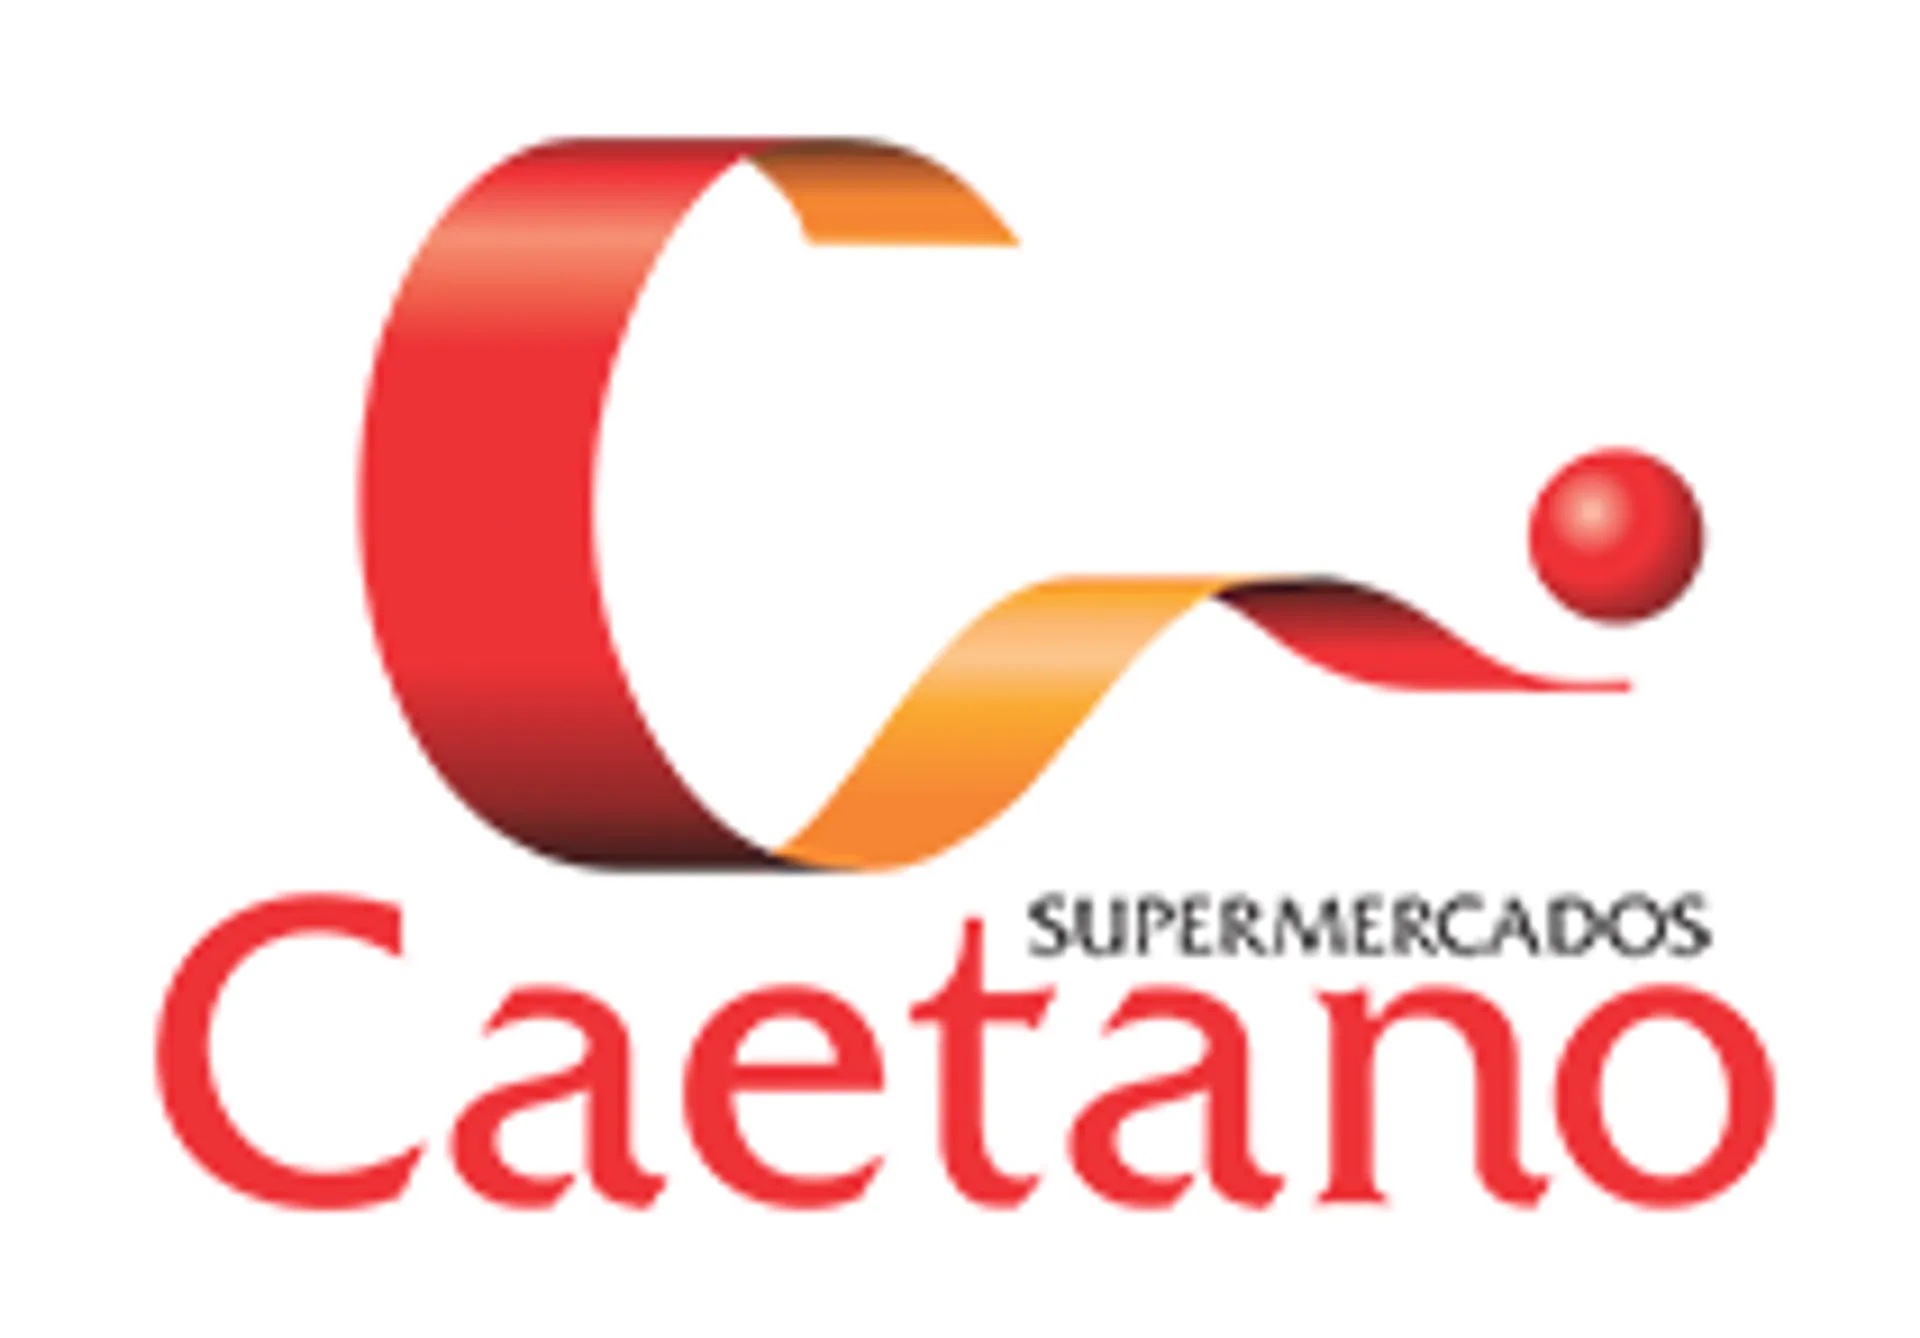 SUPERMERCADOS CAETANO logo